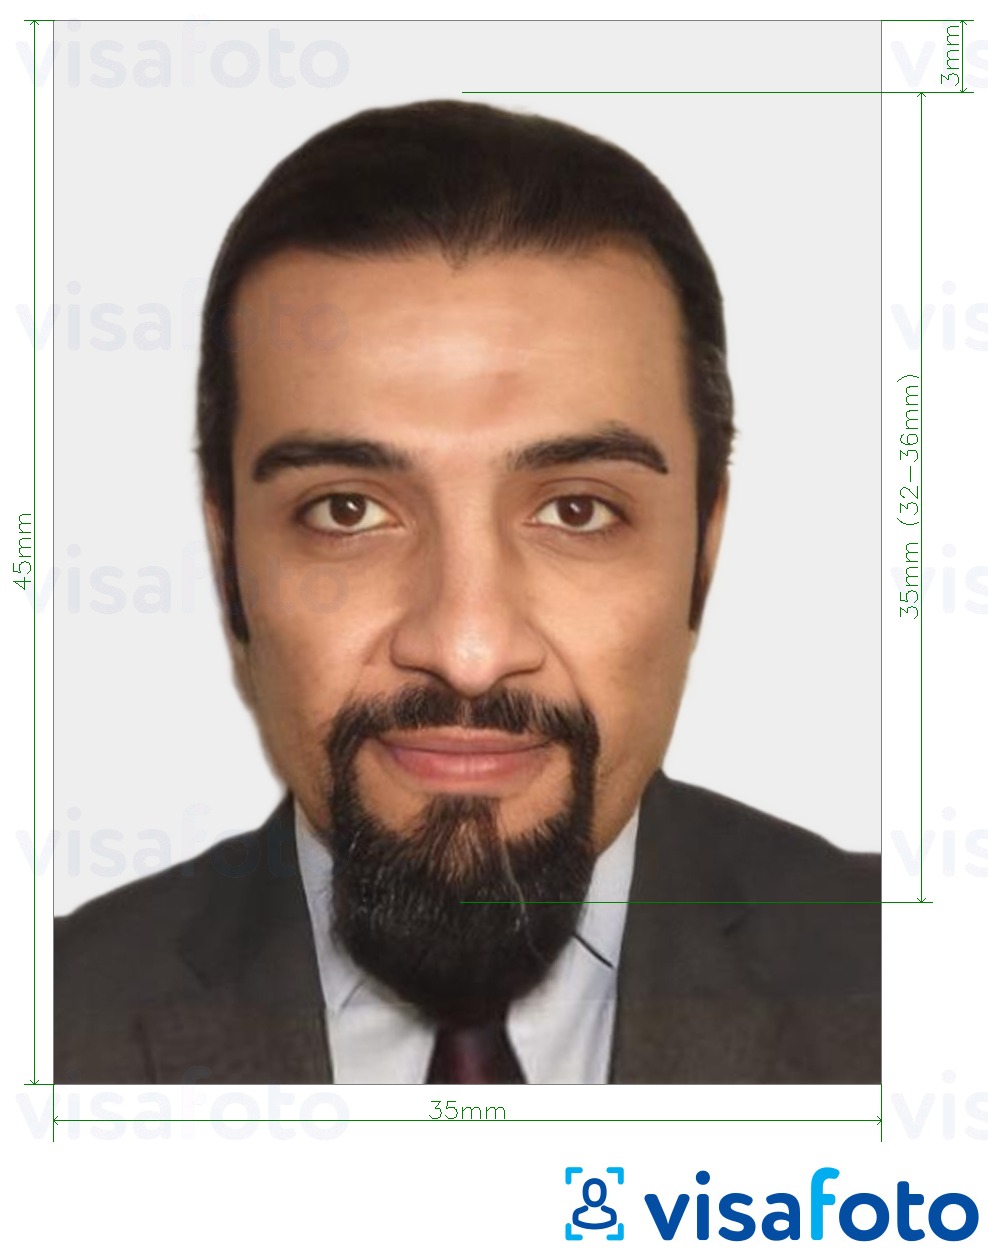 Primer fotografije za Maroški vizum 35x45 mm (3,5x4,5 cm) z natančno specifikacijo velikosti